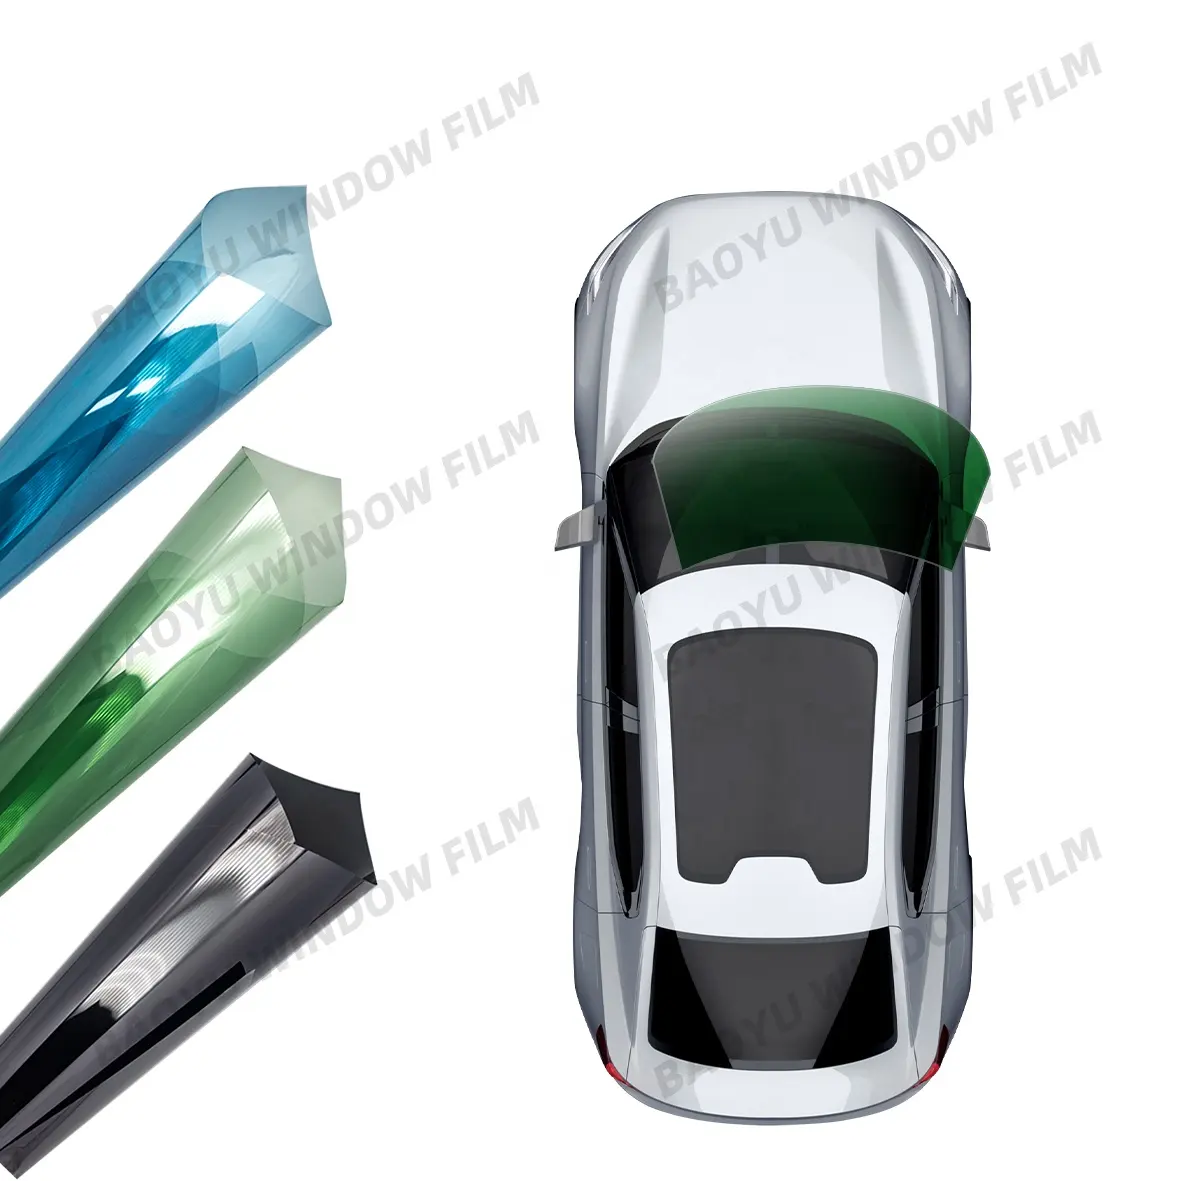 Фьюзионная пленка для окон, нано-керамические окна для автомобилей, защита окон, 3 ч 1 рулон, 100% окна, пленка, Baoyu, 10 лет CF-75